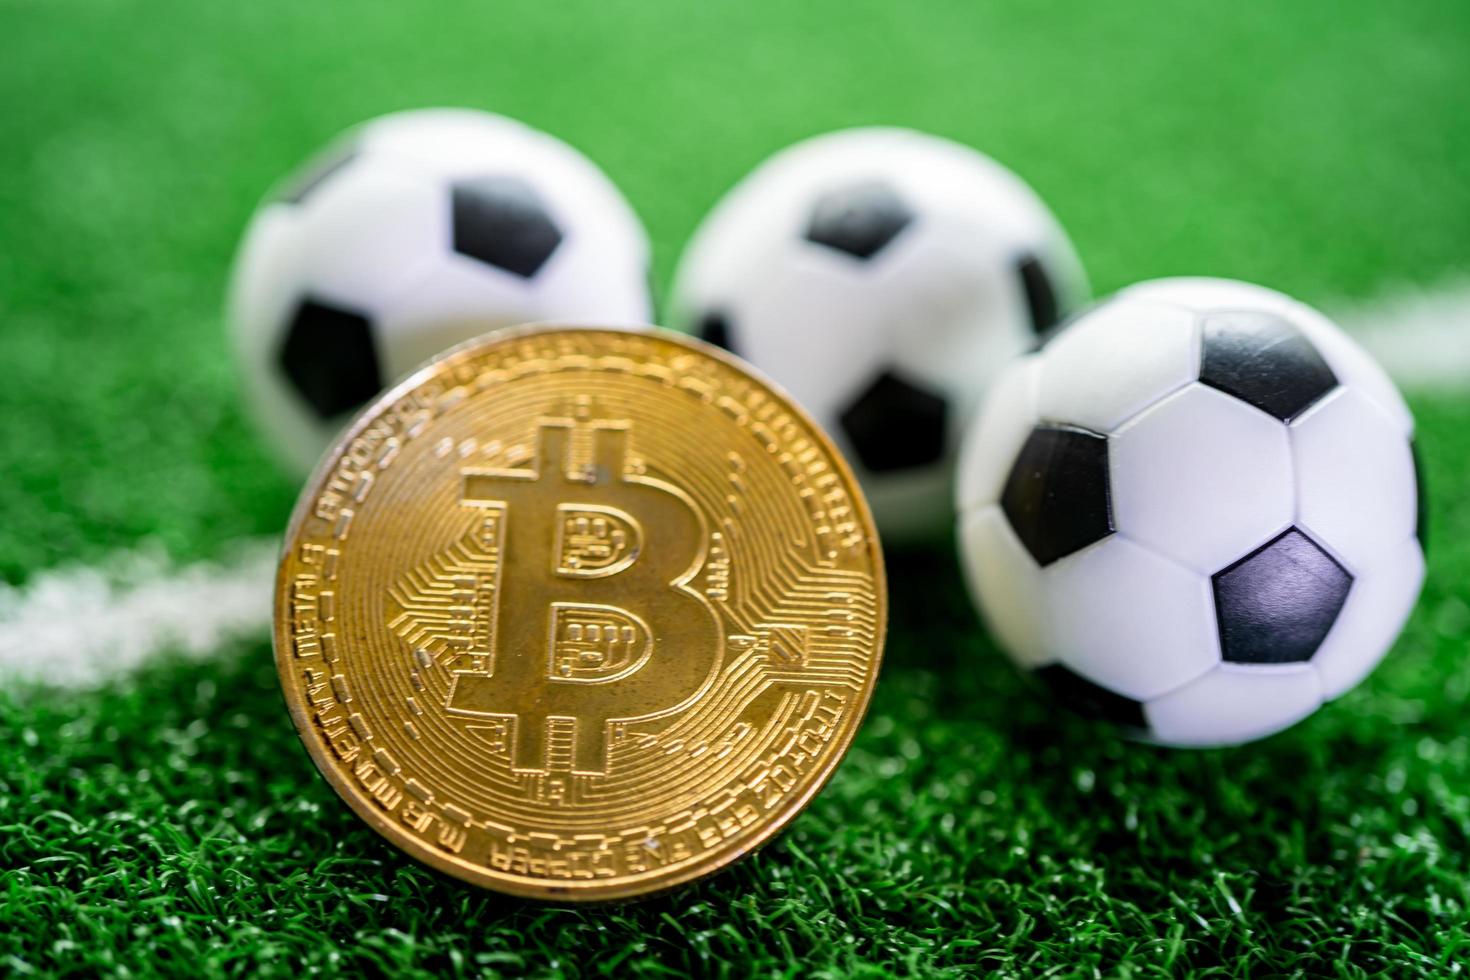 guld bitcoin med fotboll eller fotboll, kryptovaluta som används i sportspel online. foto